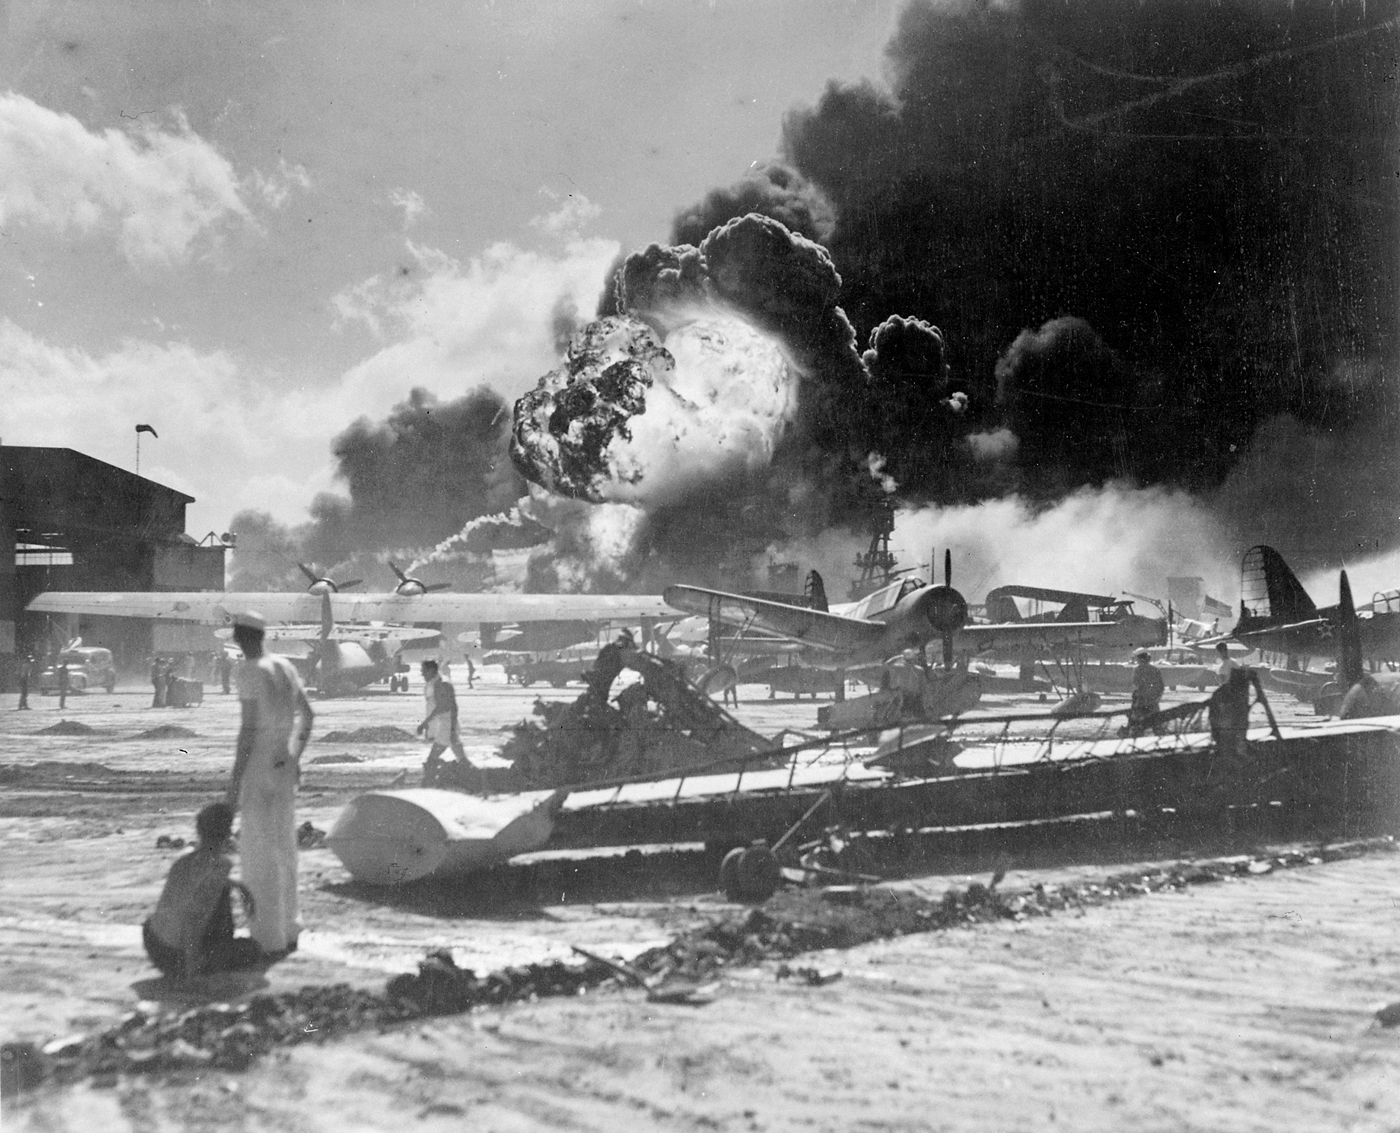 Aerei statunitensi danneggiati durante l'attacco di Pearl Harbor a Ford Island. Sullo sfondo si vede la nave USS Shaw in fiamme. USN - Official U.S. Navy photograph 80-G-19948